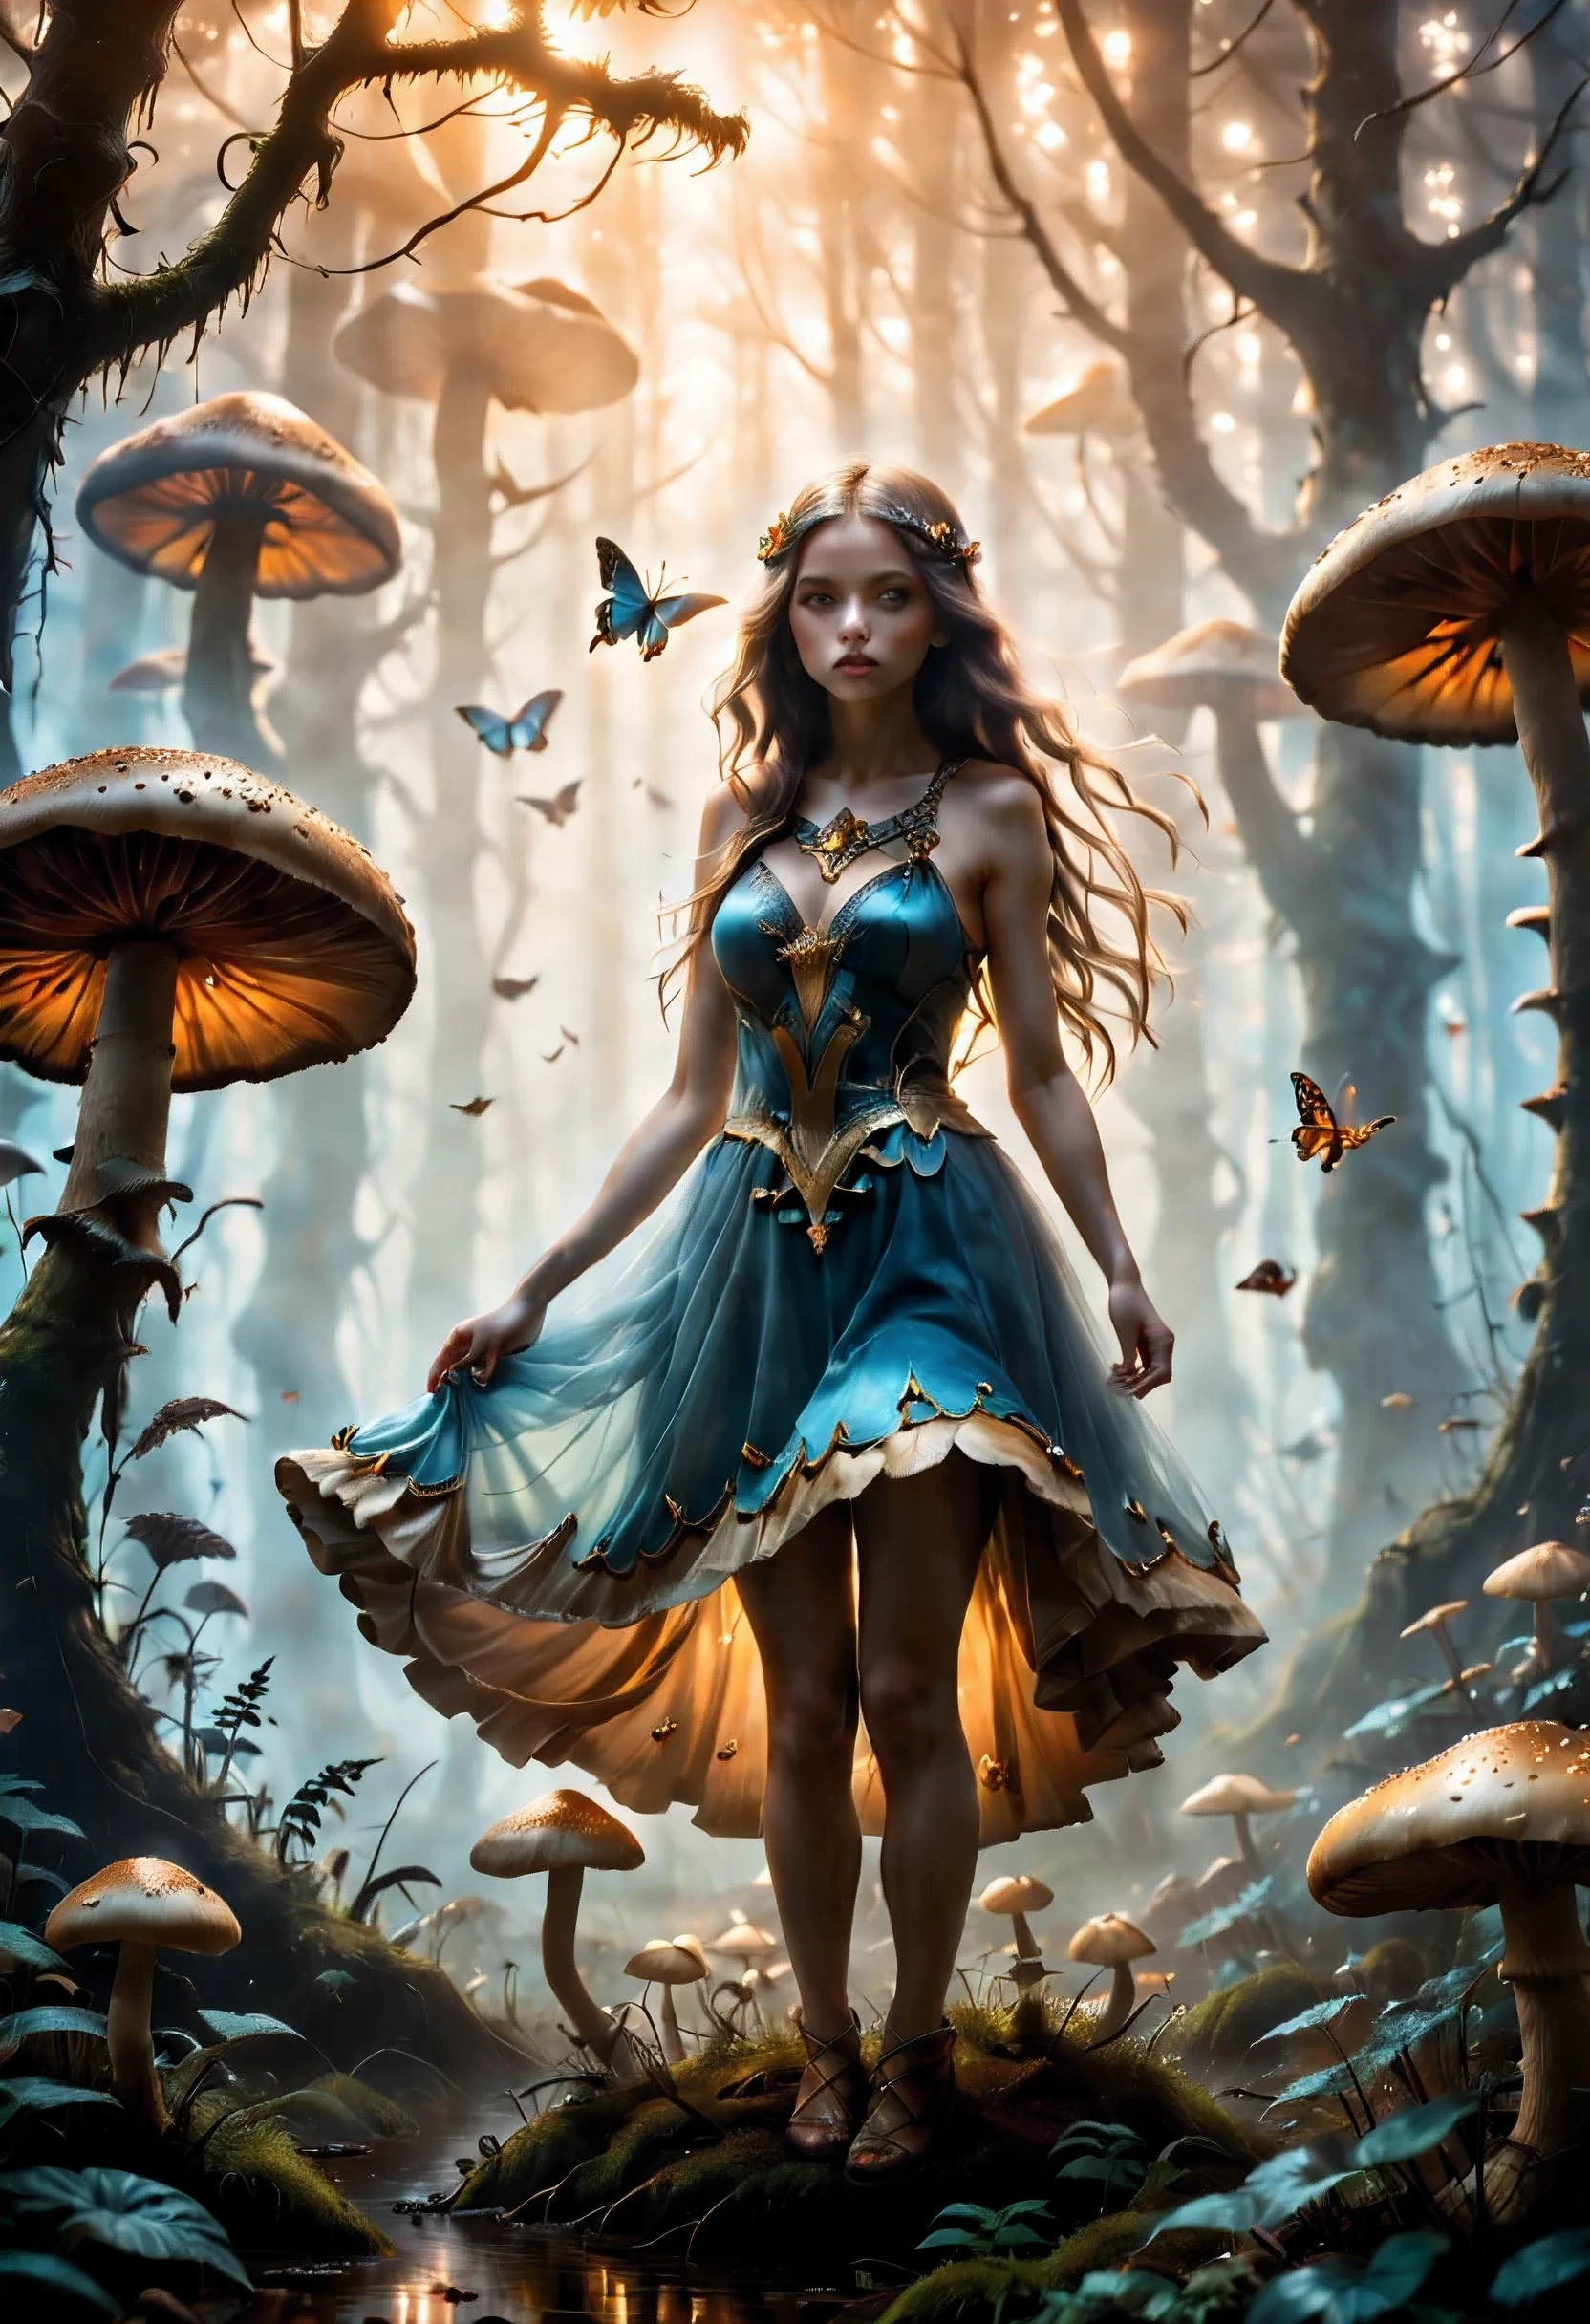 "Фотография «Золотой час», девушка в мистическом тумане, колоссальный гриб, изящные бабочки, потусторонняя магия, Композиция по правилу третей"